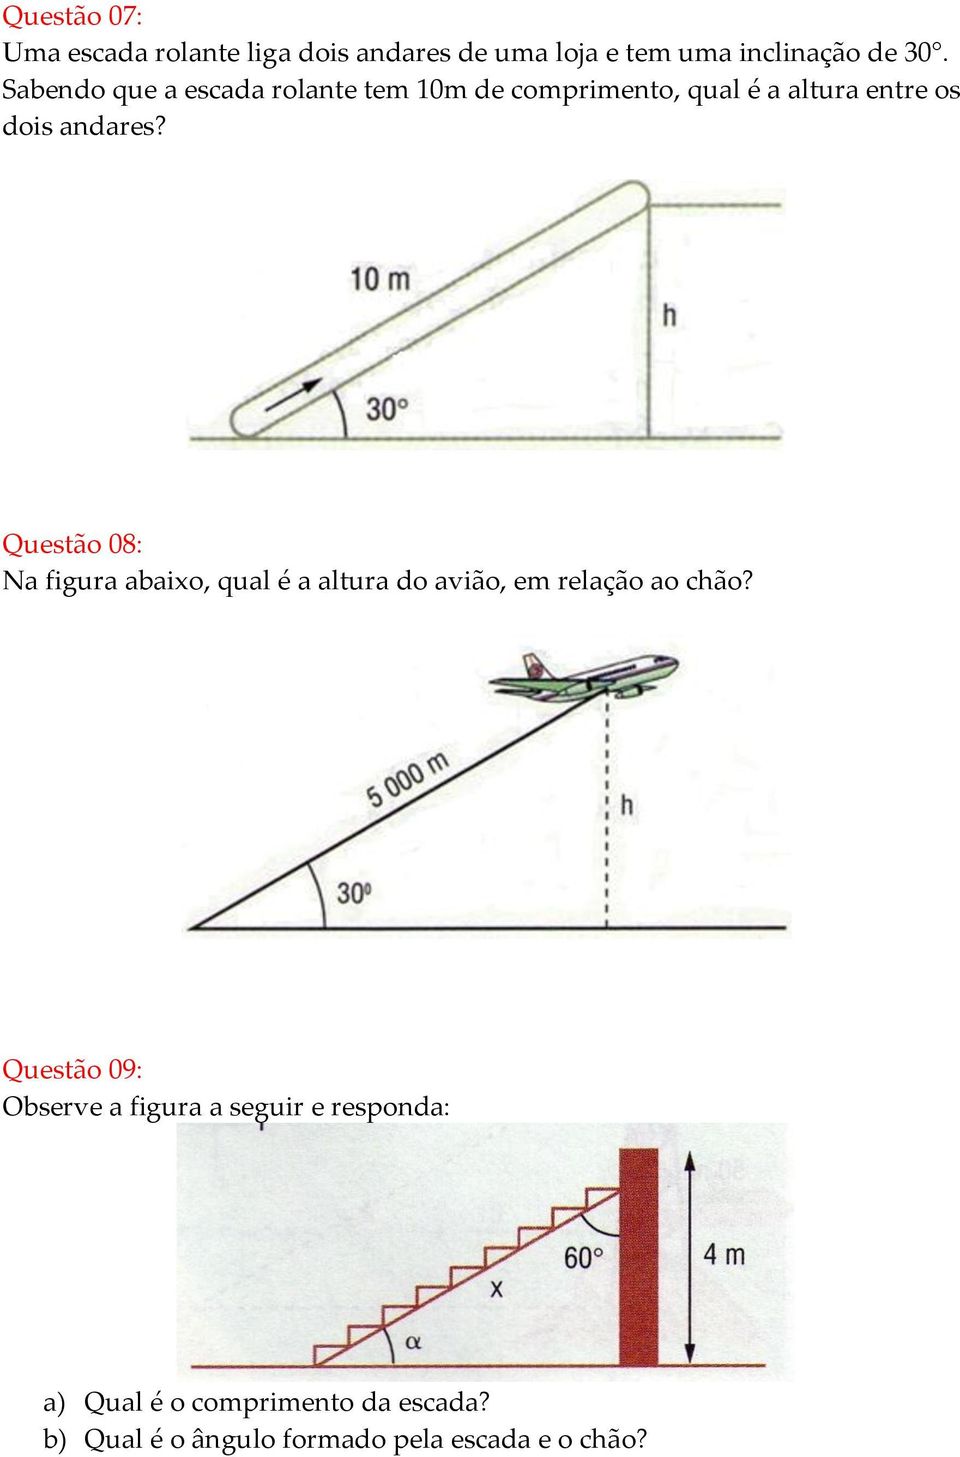 Questão 08: Na figura abaixo, qual é a altura do avião, em relação ao chão?